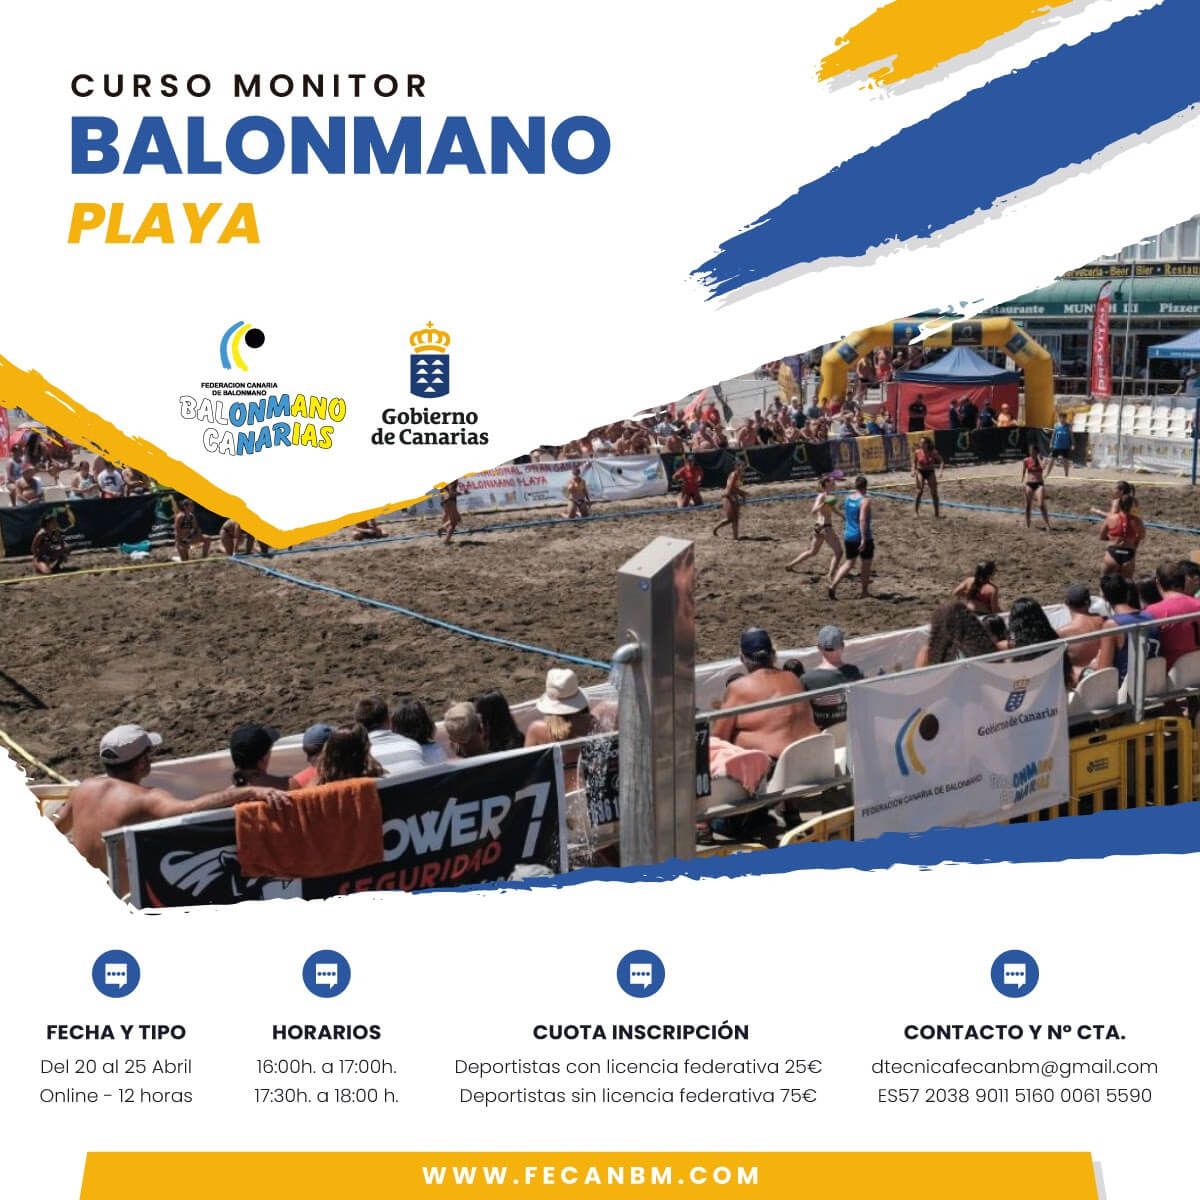 Rotundo éxito del curso oficial de Balonmano Playa Online